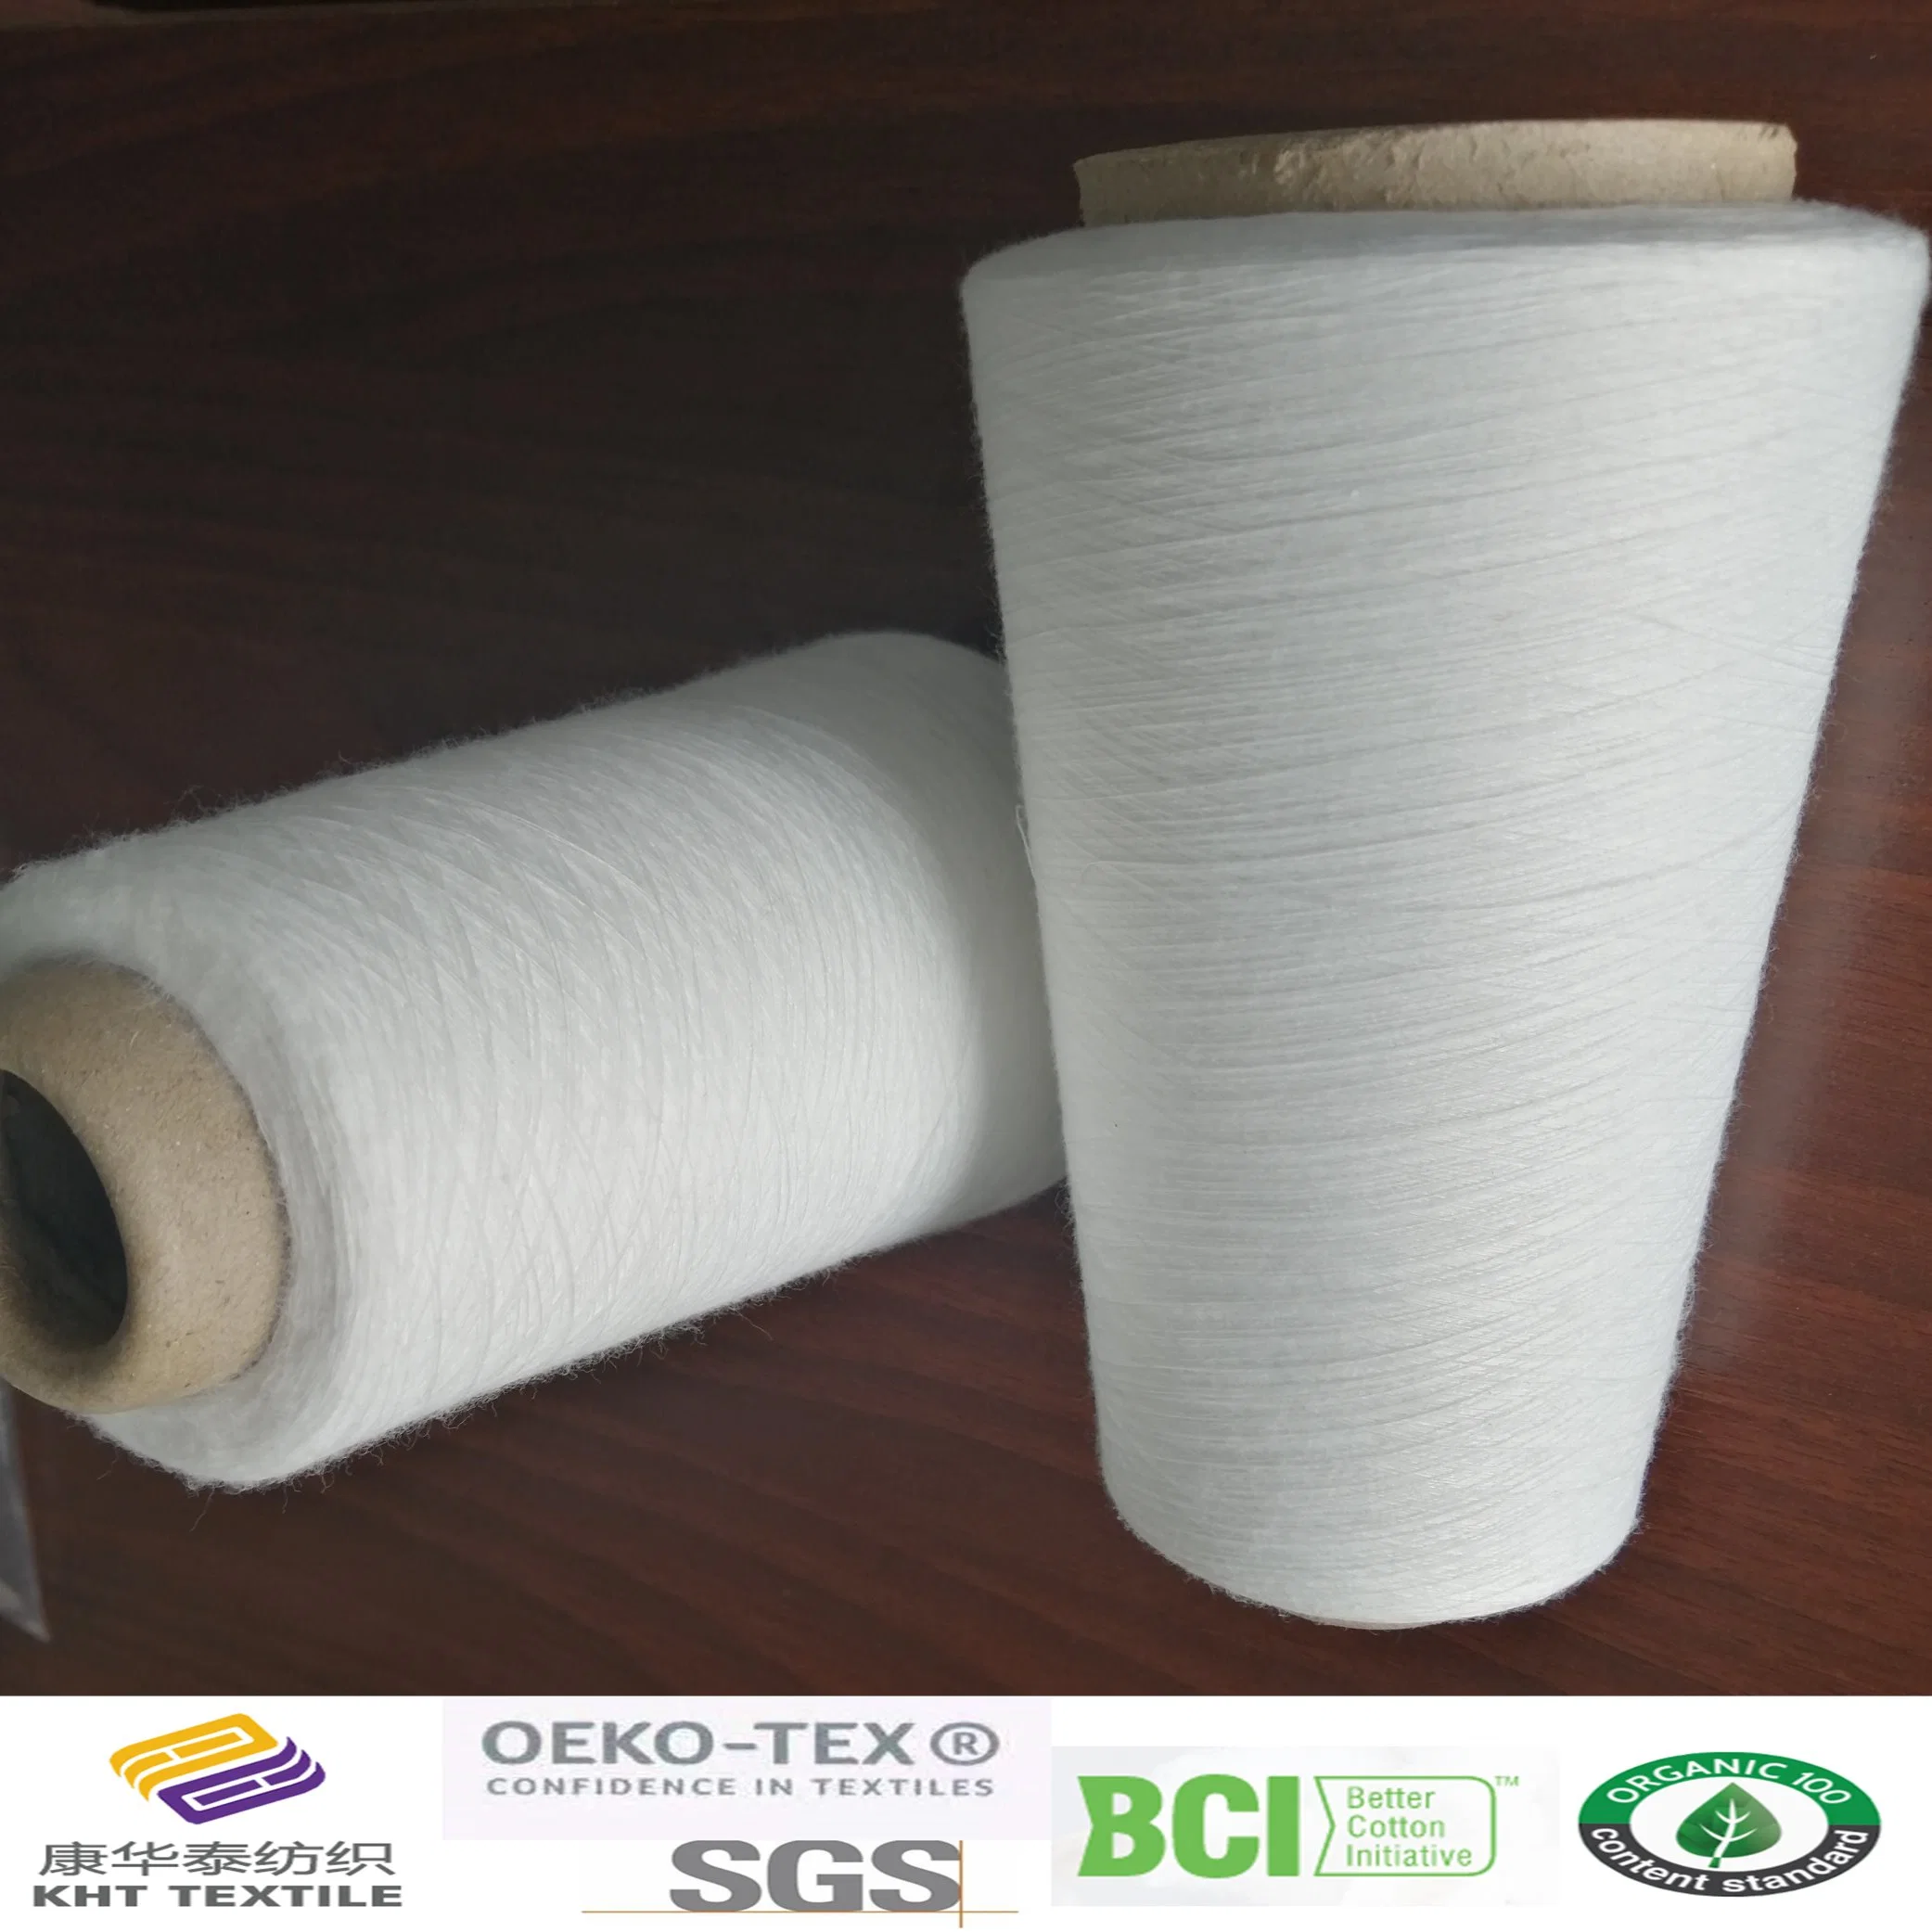 Reciclar/ hilados de algodón orgánico Kht industria textil china ne40s/2, 50s/2, 60s/2, 80s/2